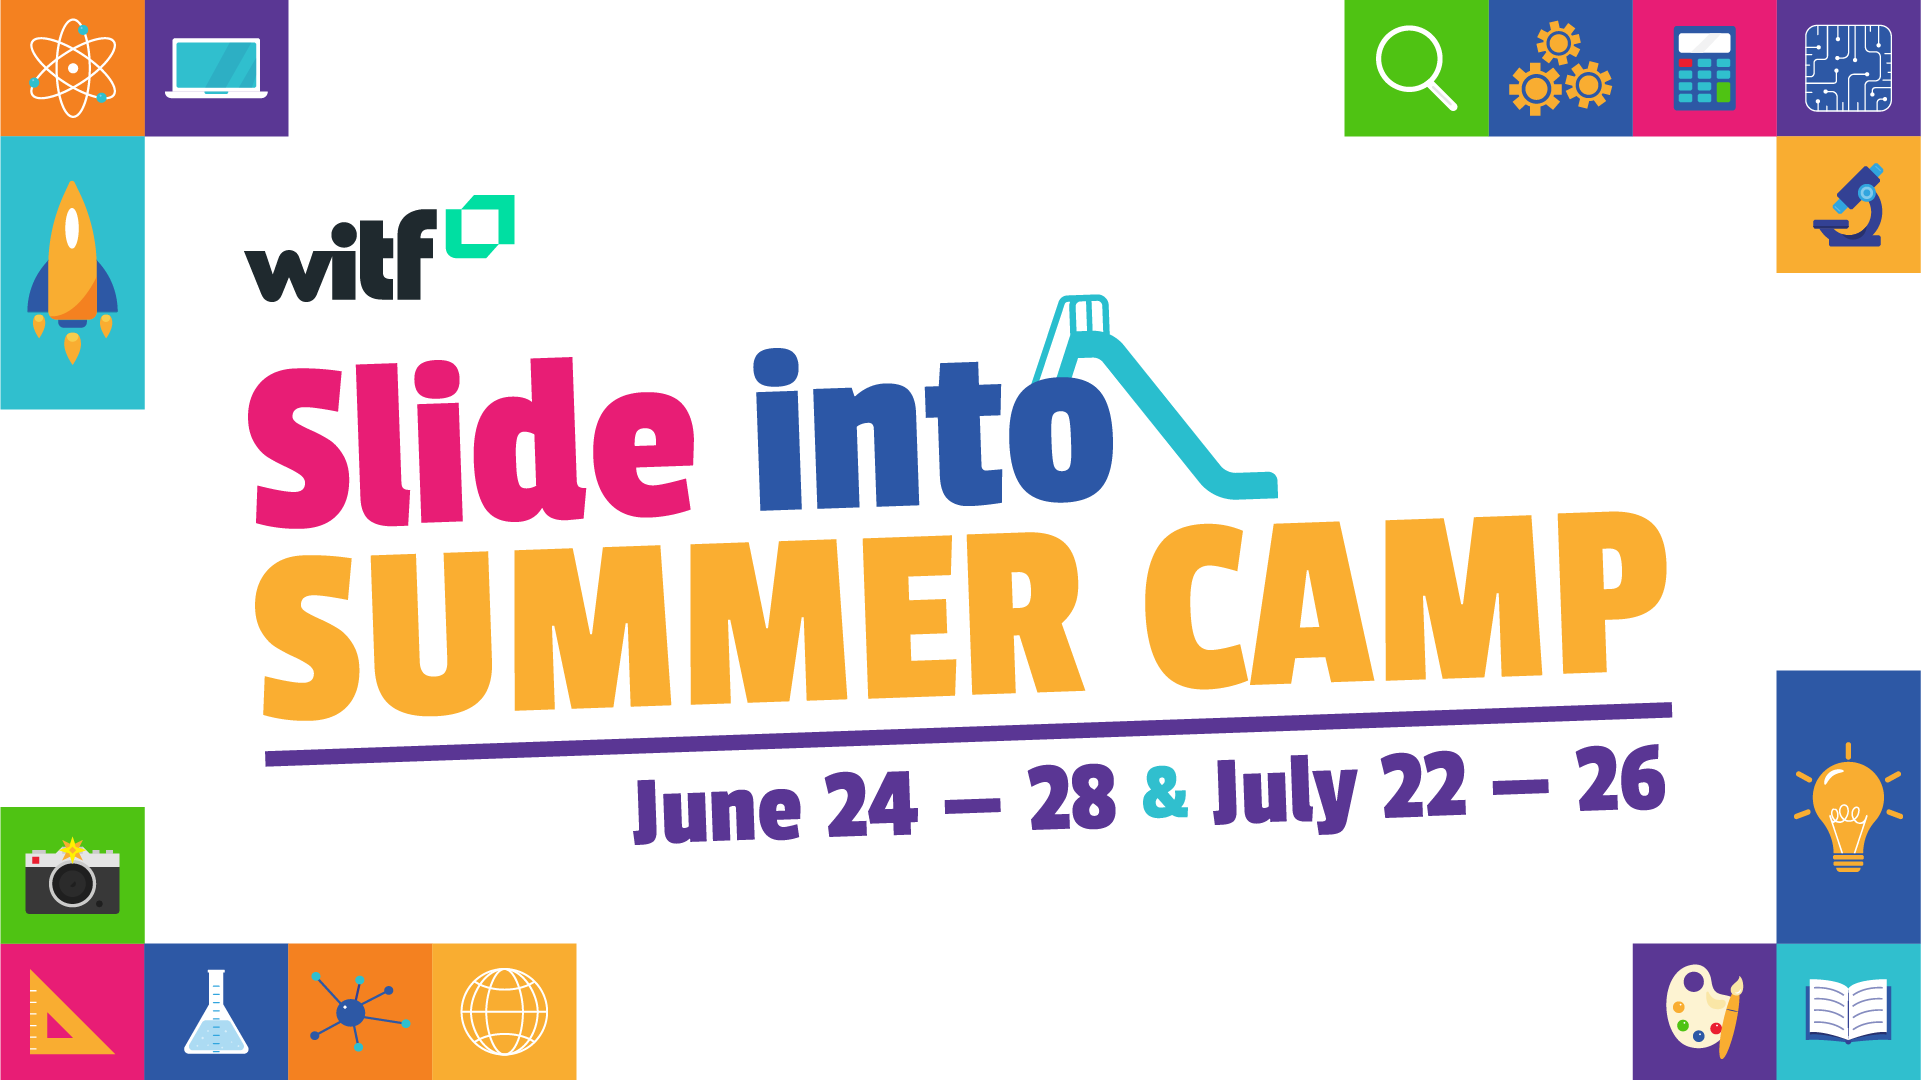 Slide into Summer Camp